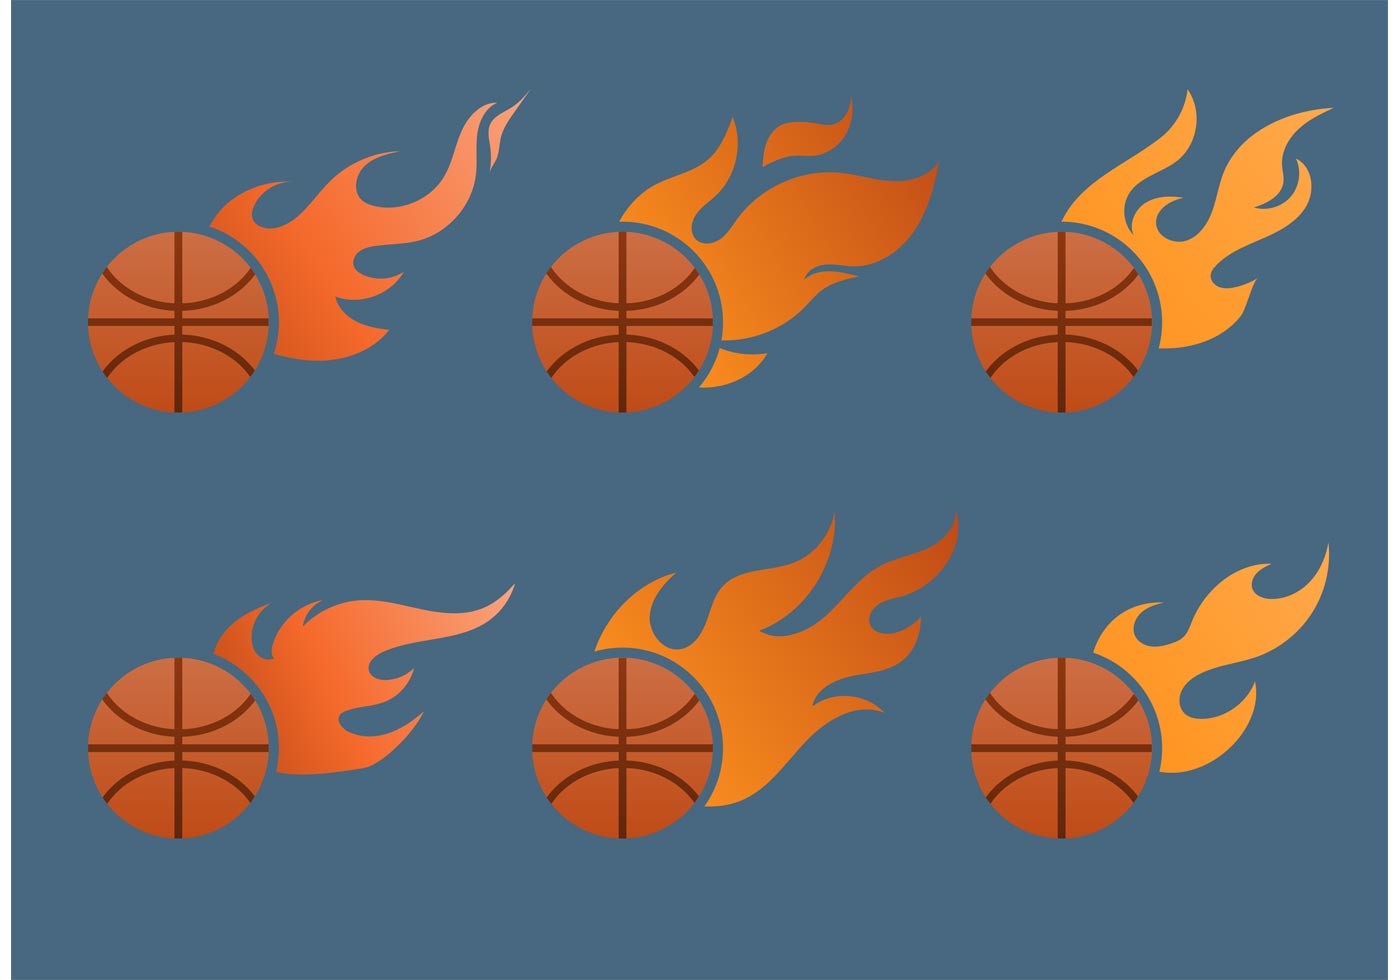 Flaming Basketball Vector Set - Download Free Vectors, Clipart Graphics & Vector Art1400 x 980